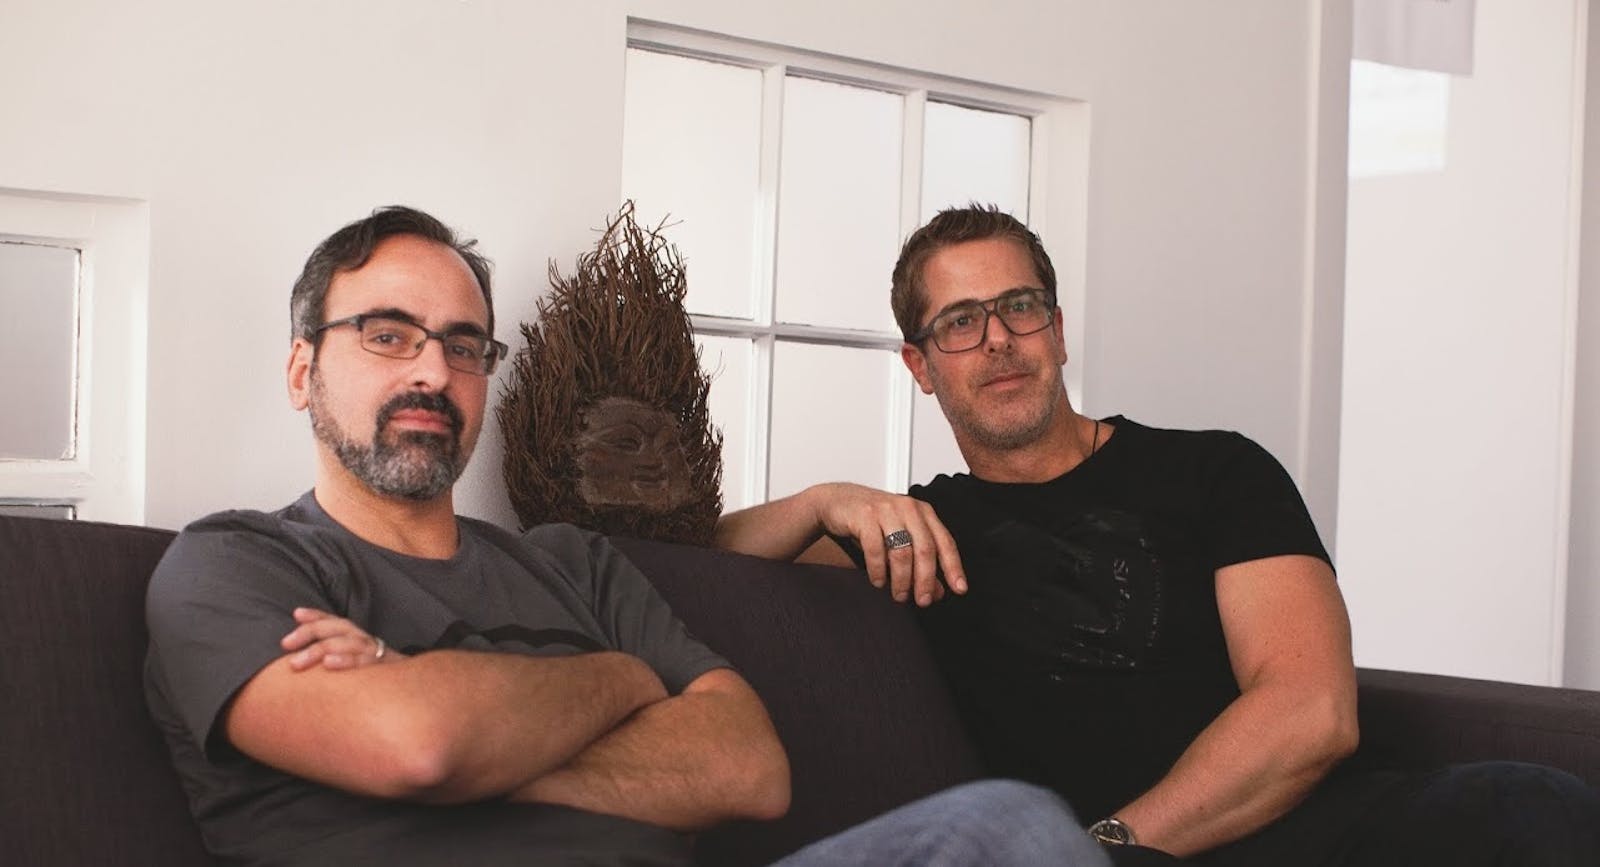 Cyanogen co-founders Steve Kondik, left, and Kirt McMaster. Photo by Cyanogen.